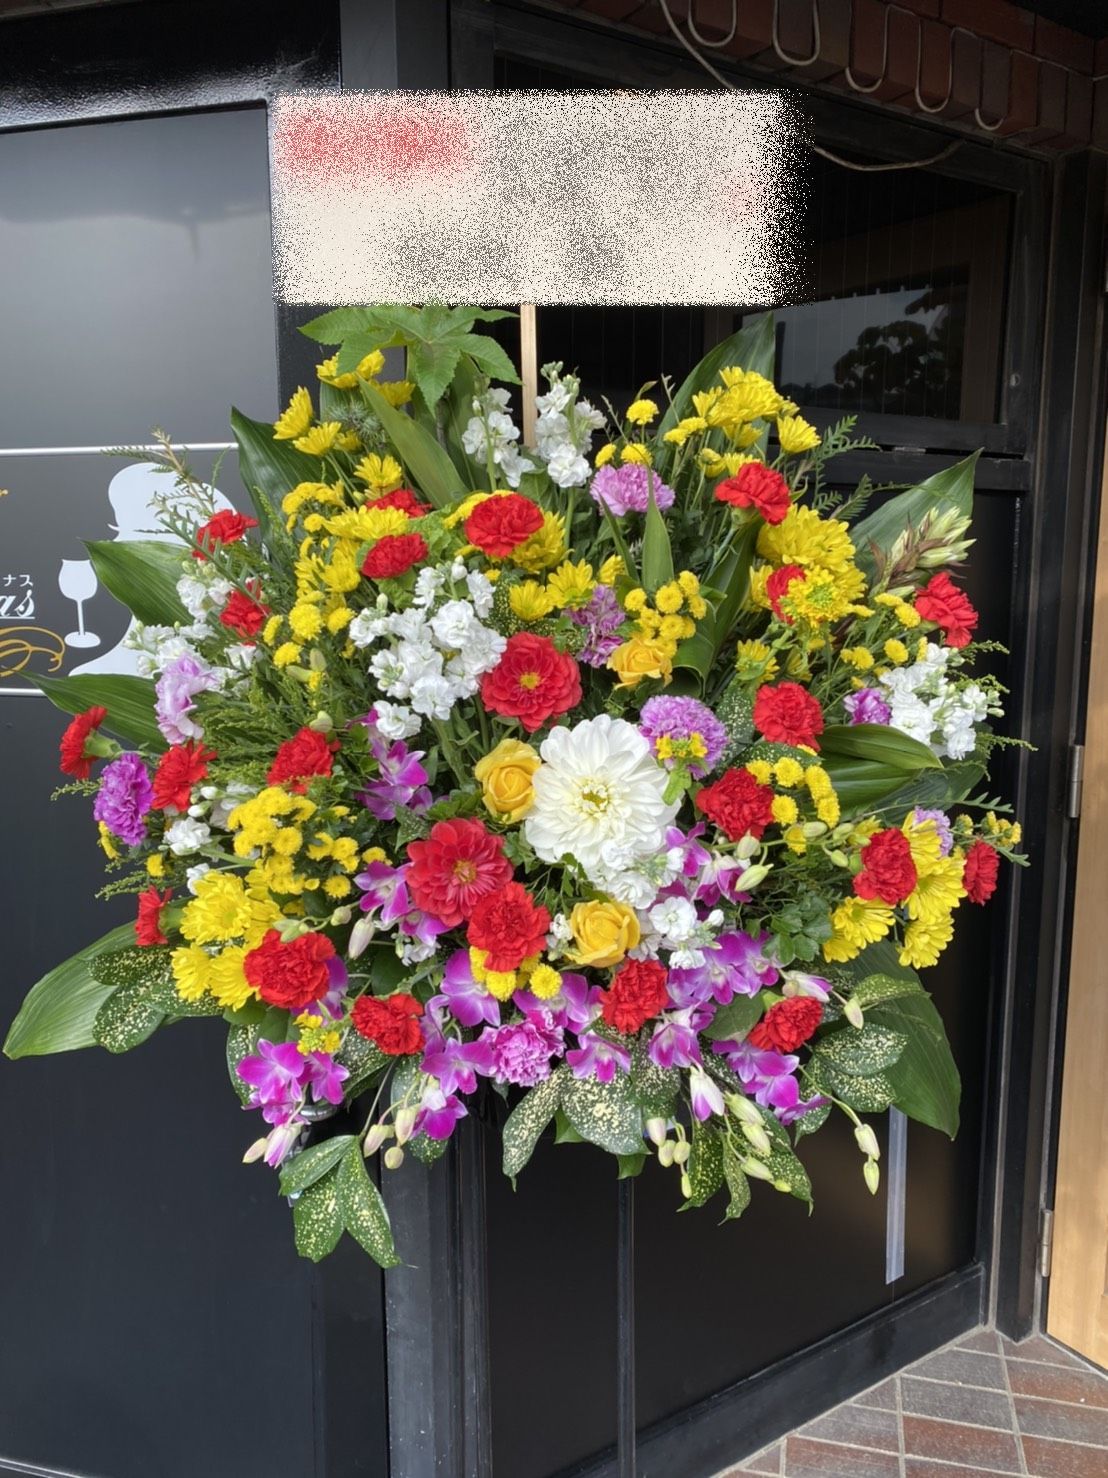 横浜市神奈川区へスタンド花を即日当日配達しました。【横浜花屋の花束・スタンド花・胡蝶蘭・バルーン・アレンジメント配達事例832】